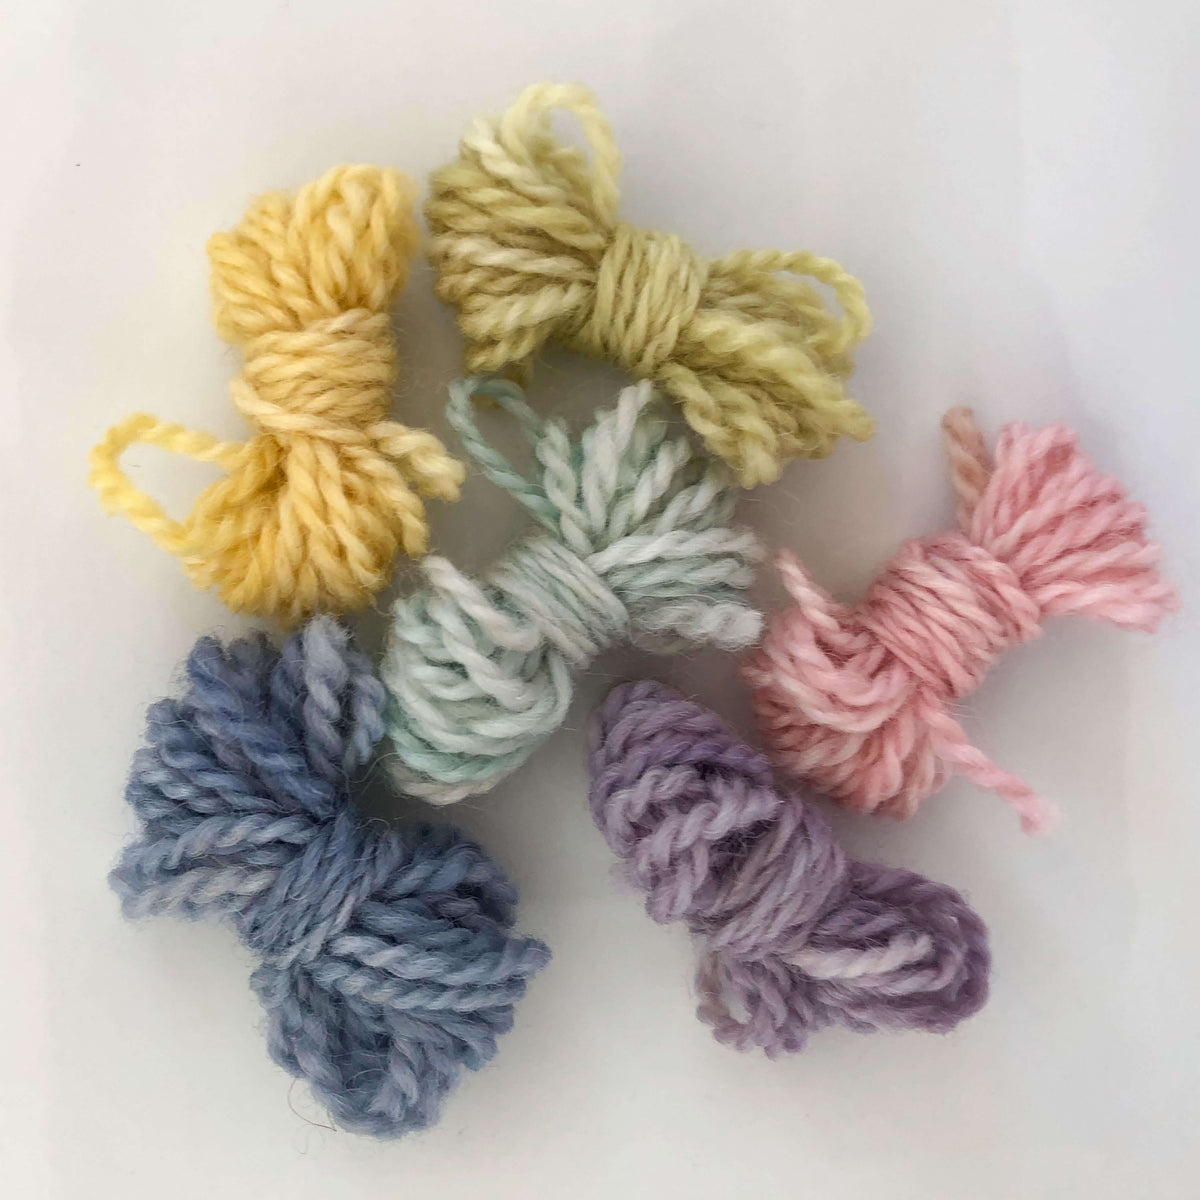 Tiny Loom Kit - Alpaca Blend - Succulent Colors